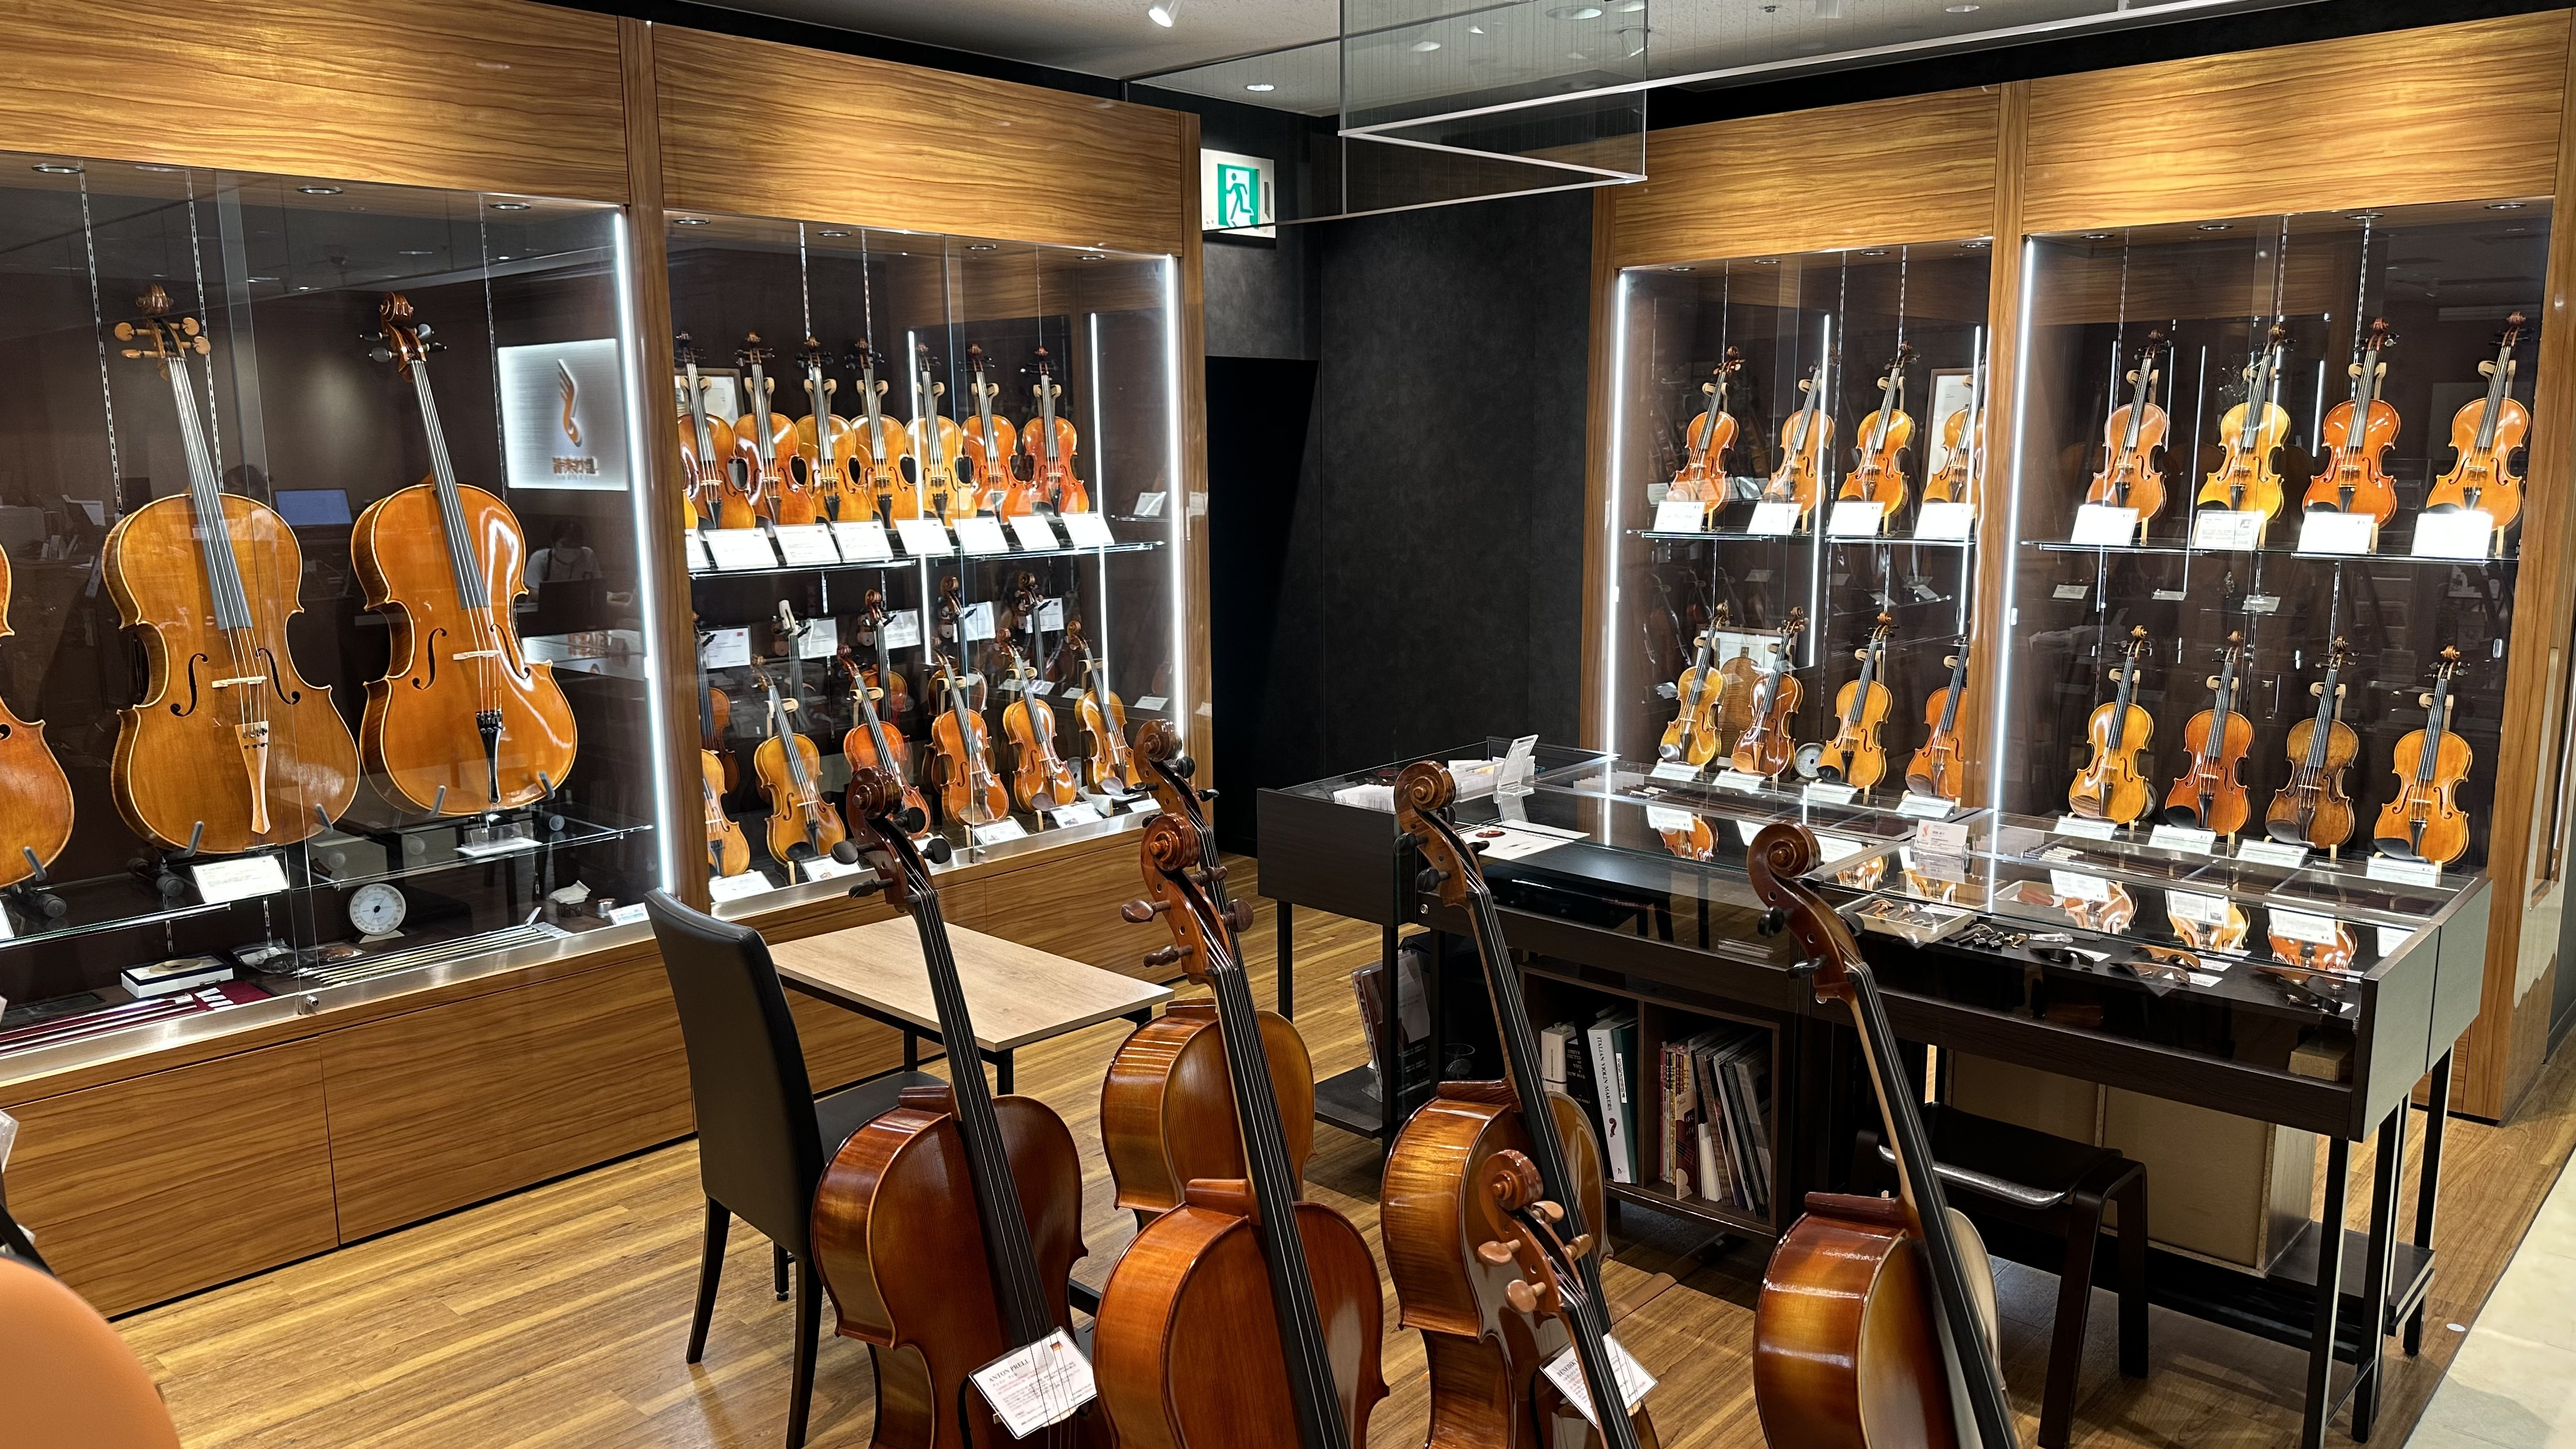 当店はヴァイオリン（バイオリン）、ビオラ、チェロ、弓、ケース、松脂、肩当など弦楽器に関連する商品を専門的に扱っております。お求めやすい価格の入門用ビギナーセットから海外工房製の一点ものまで幅広い品揃えで展示致しております。 また常駐リペアマンによる迅速な修理・調整対応も可能。クラシックコンサートの開 […]